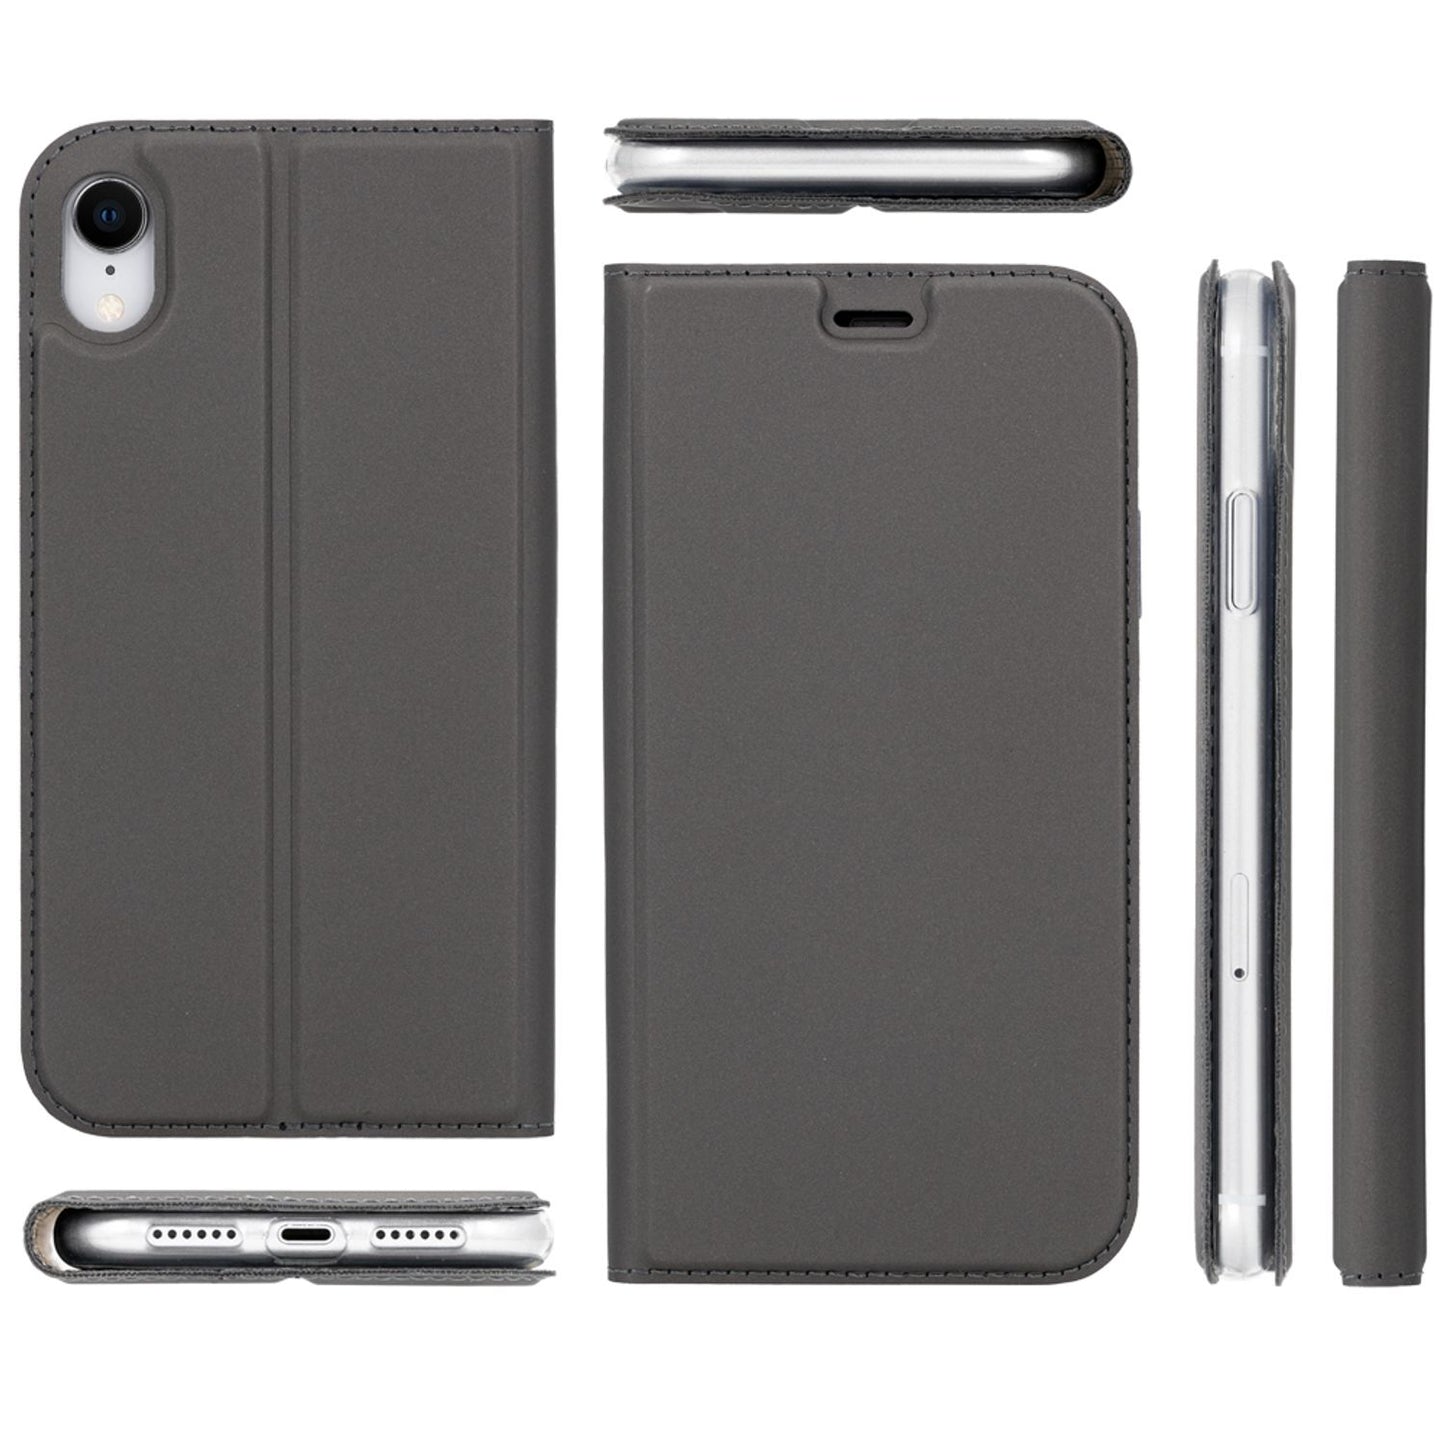 NALIA Flip Case für iPhone XR, Slim Schutz Cover Handy Hülle Tasche Bumper Etui